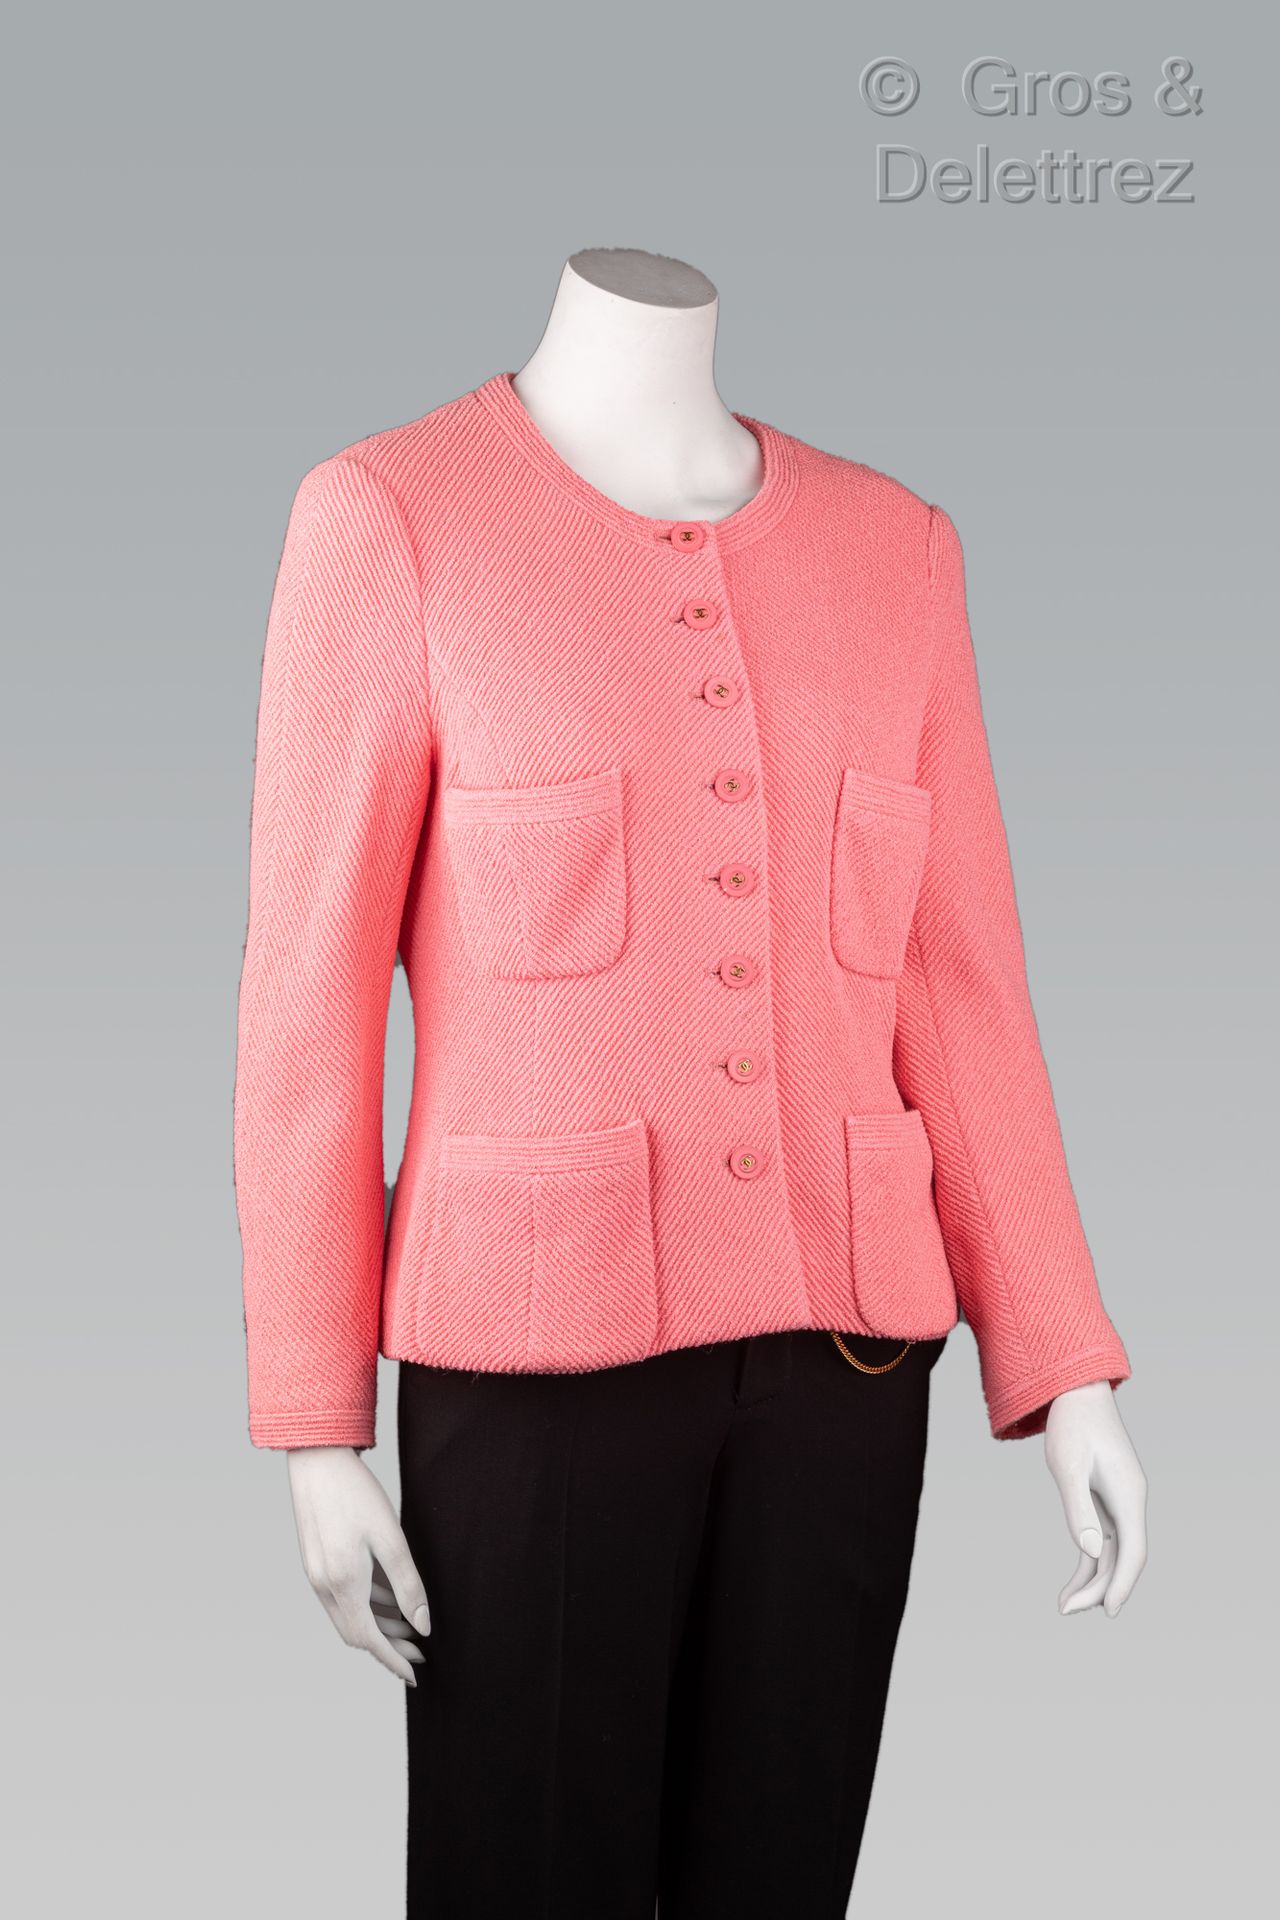 Null 卡尔-拉格斐的香奈儿专卖店

1995年巡航系列

粉红色人字纹羊毛外套，圆领，单排扣，带标志，长袖，四个贴袋。白色标签，黑色图形（污损）。